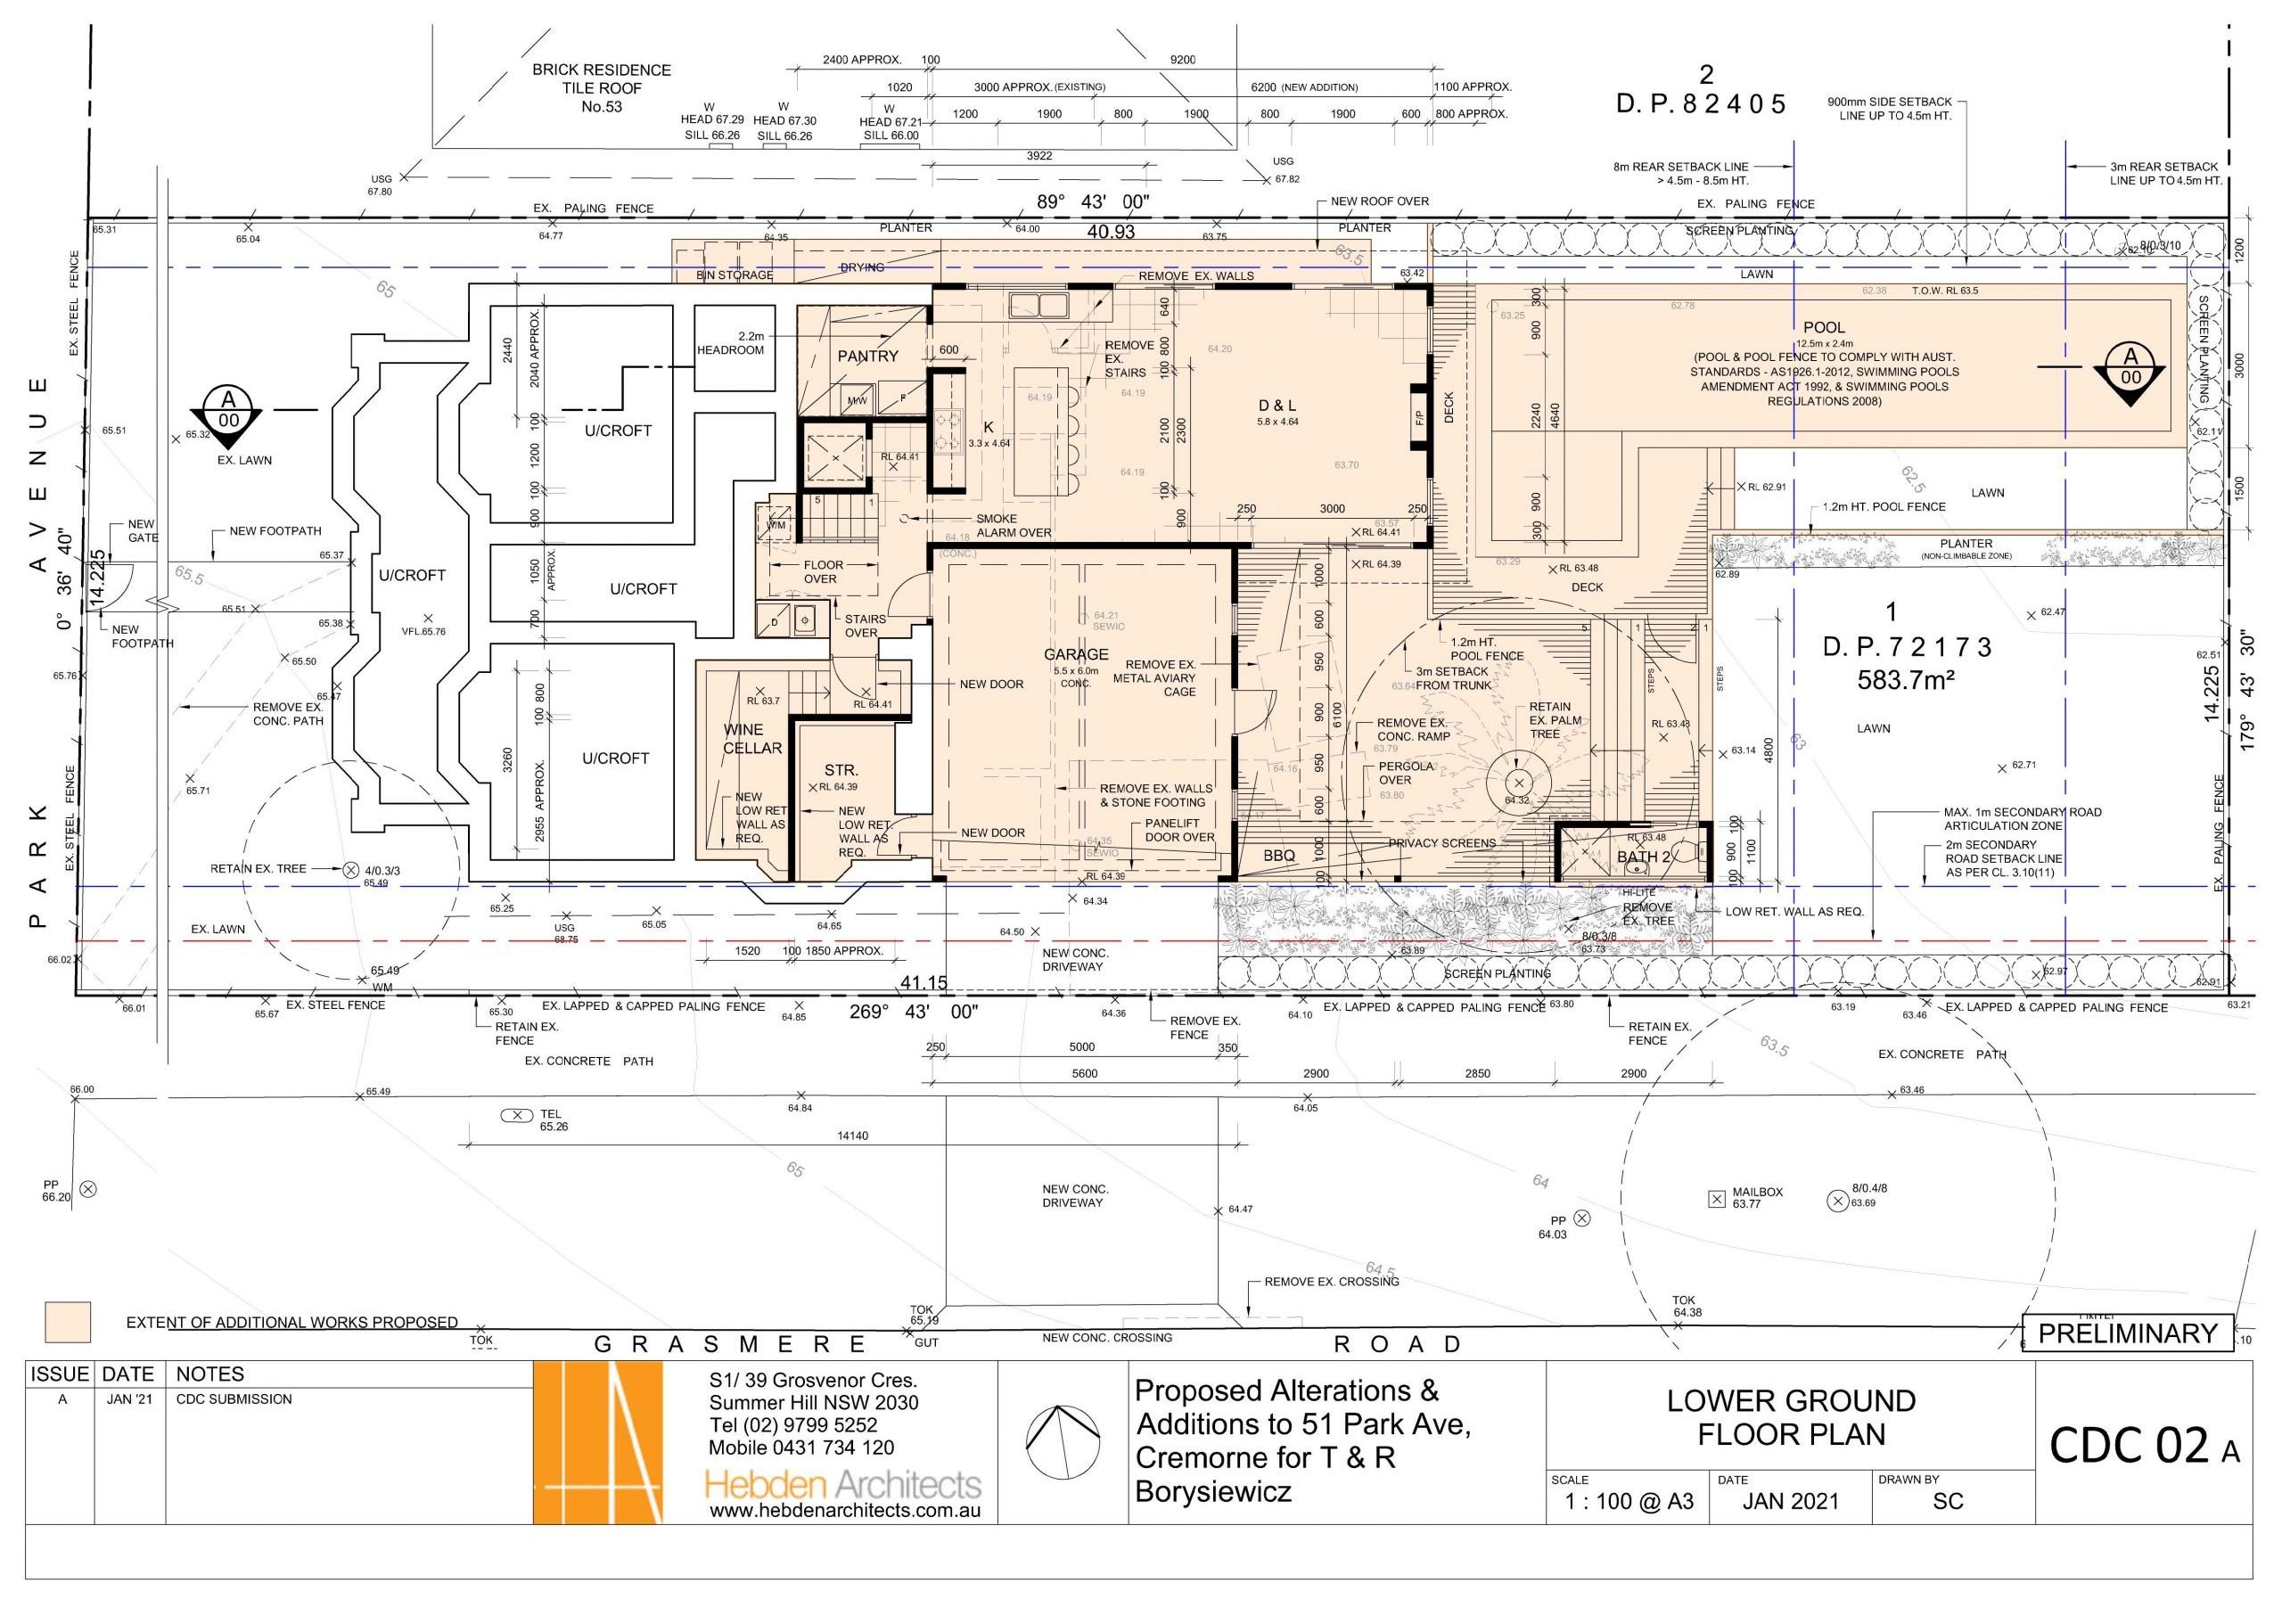 CDC 02 Lower Ground Floor Plan 20 01 2021